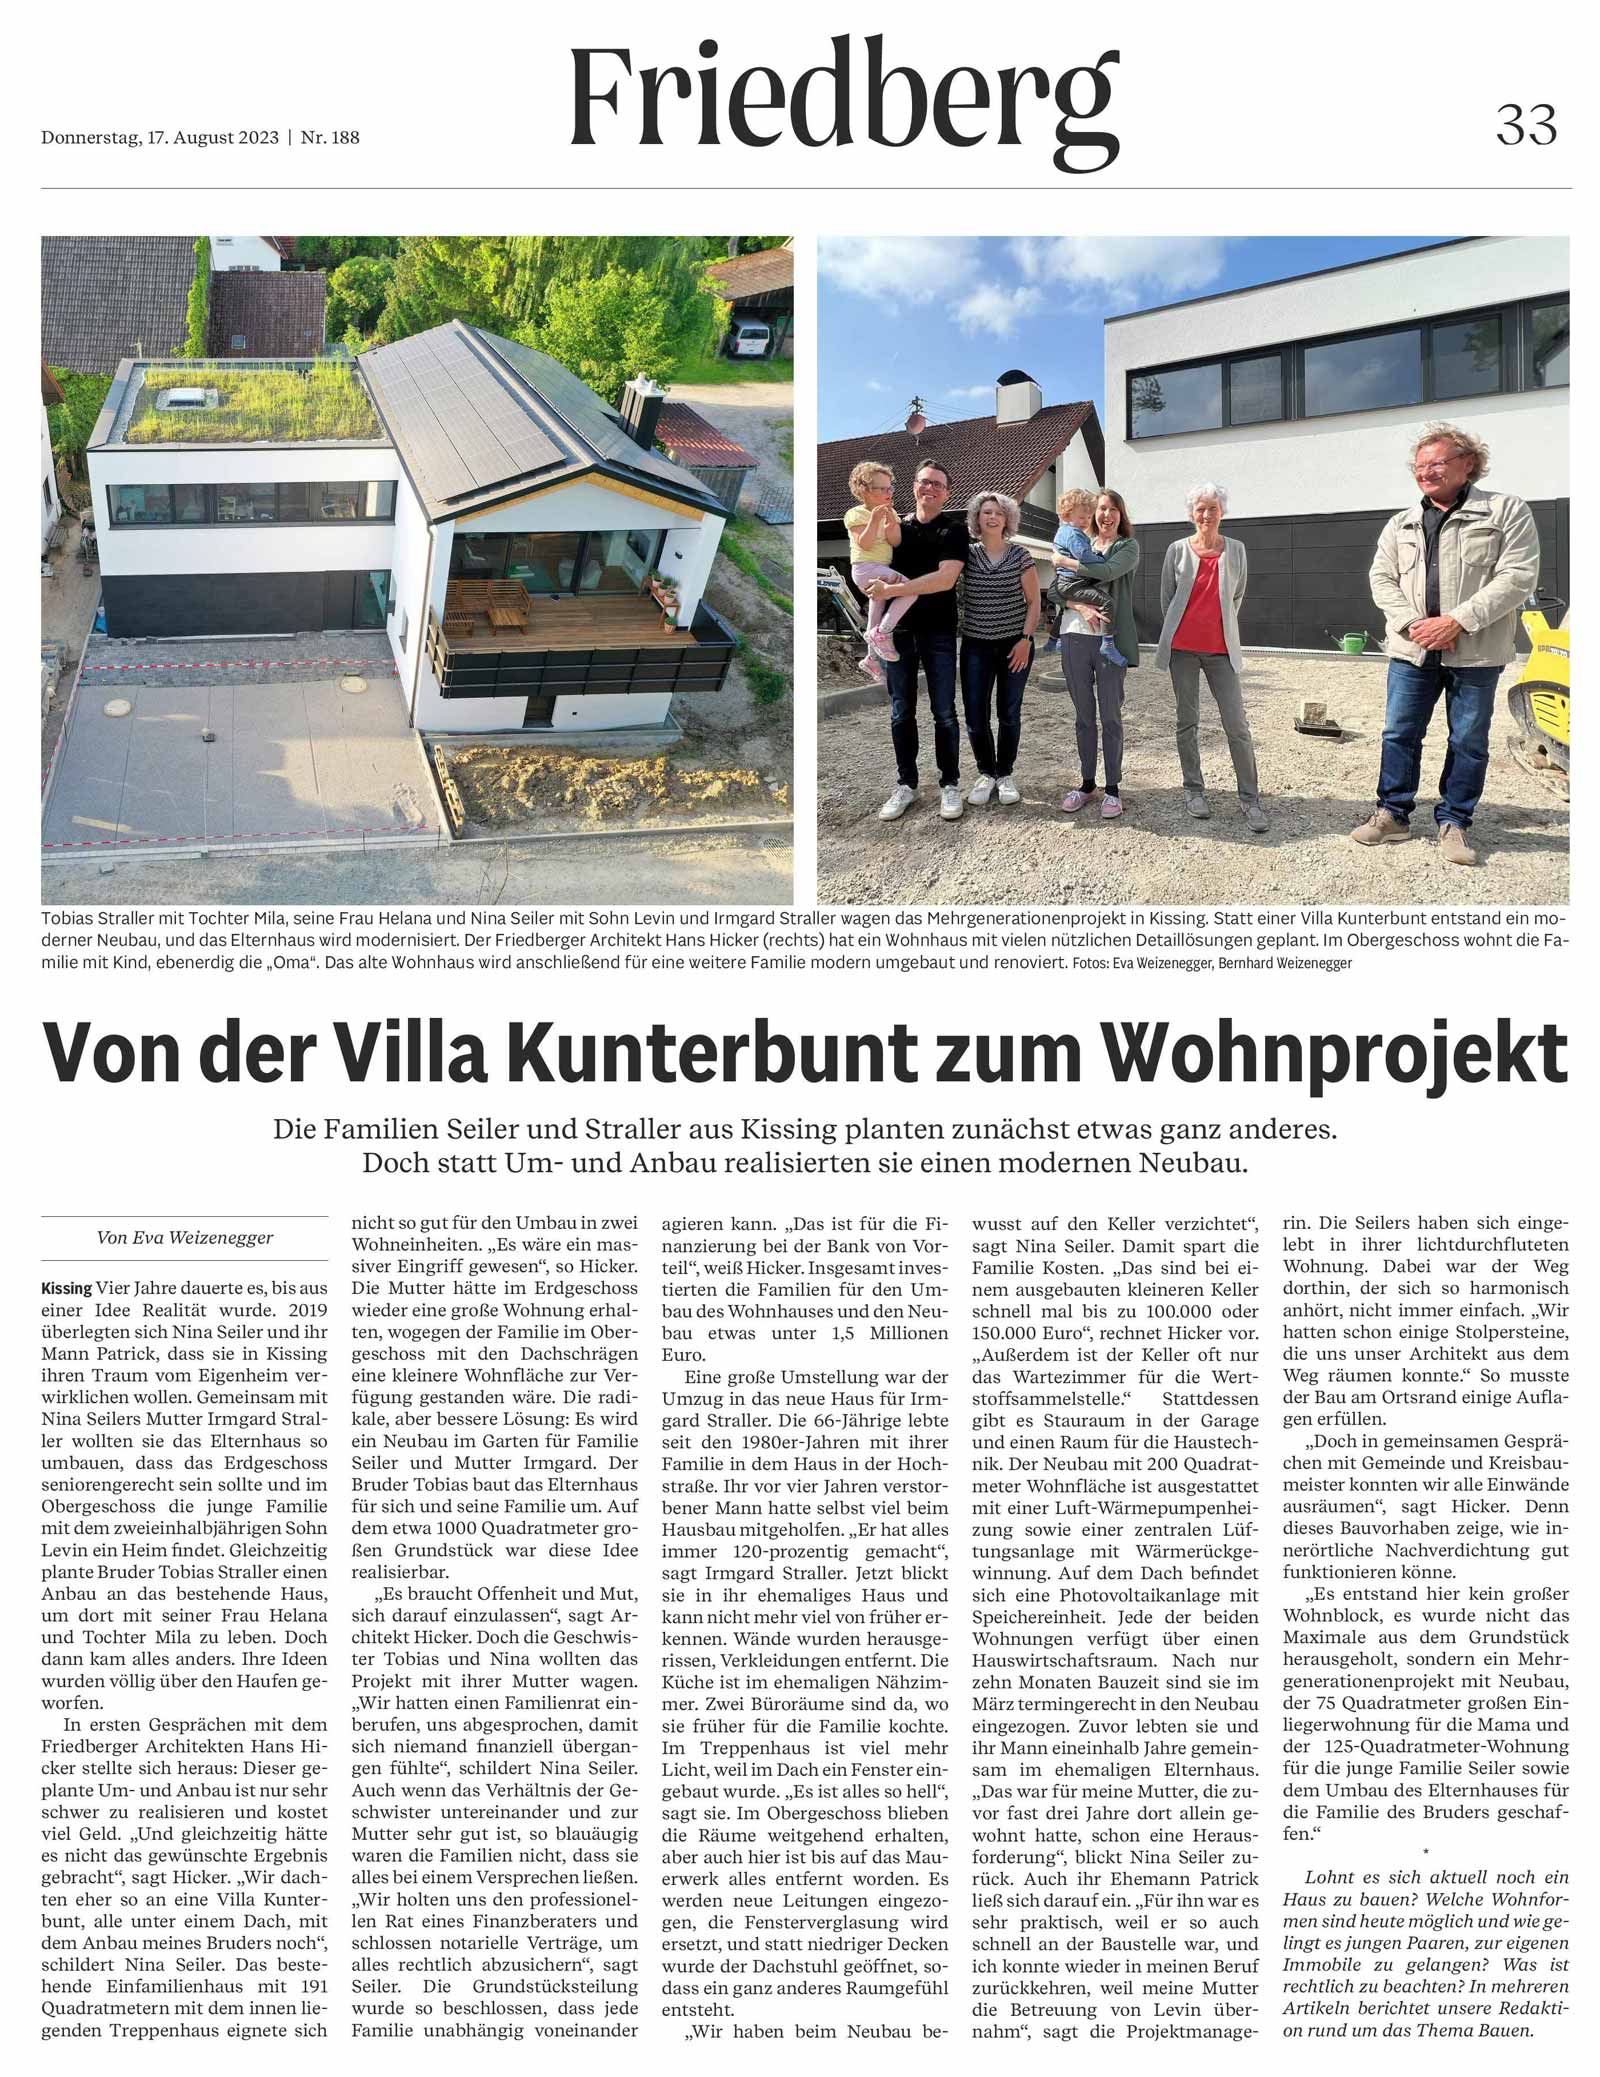 Hicker architekten - Haus S in der Friedberger Allgemeinen Ausgabe vom 17.08.2023